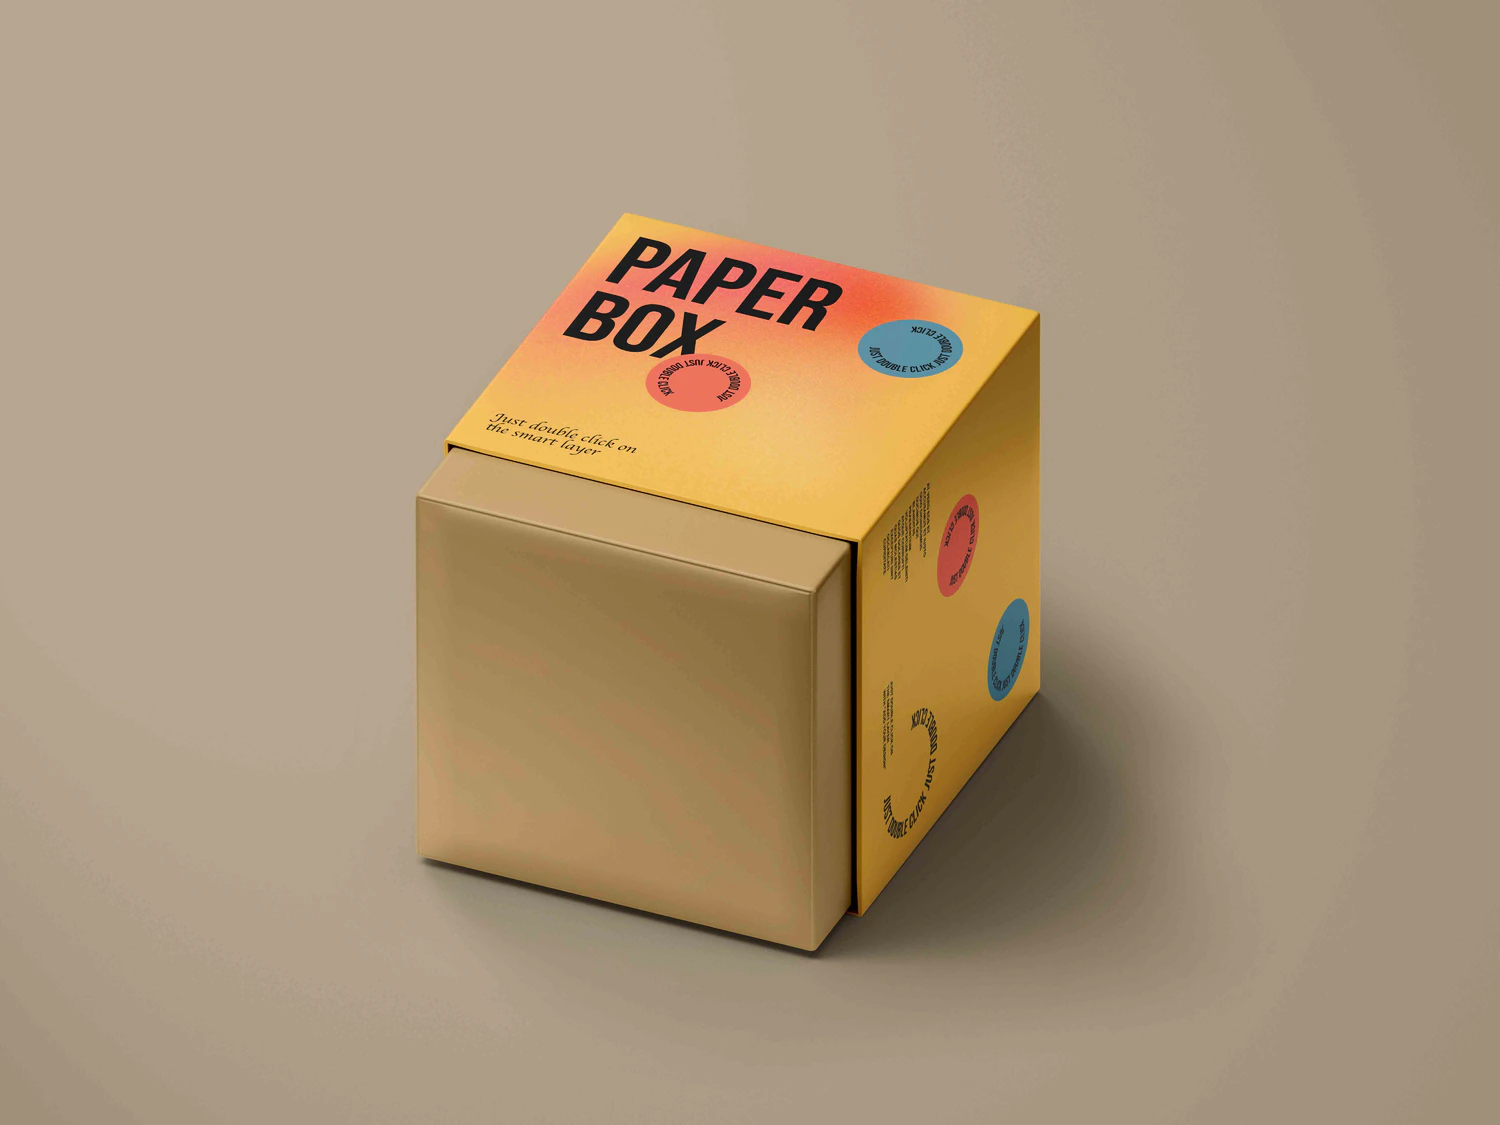 3341 正方形天地盖纸盒包装盒设计PSD样机素材